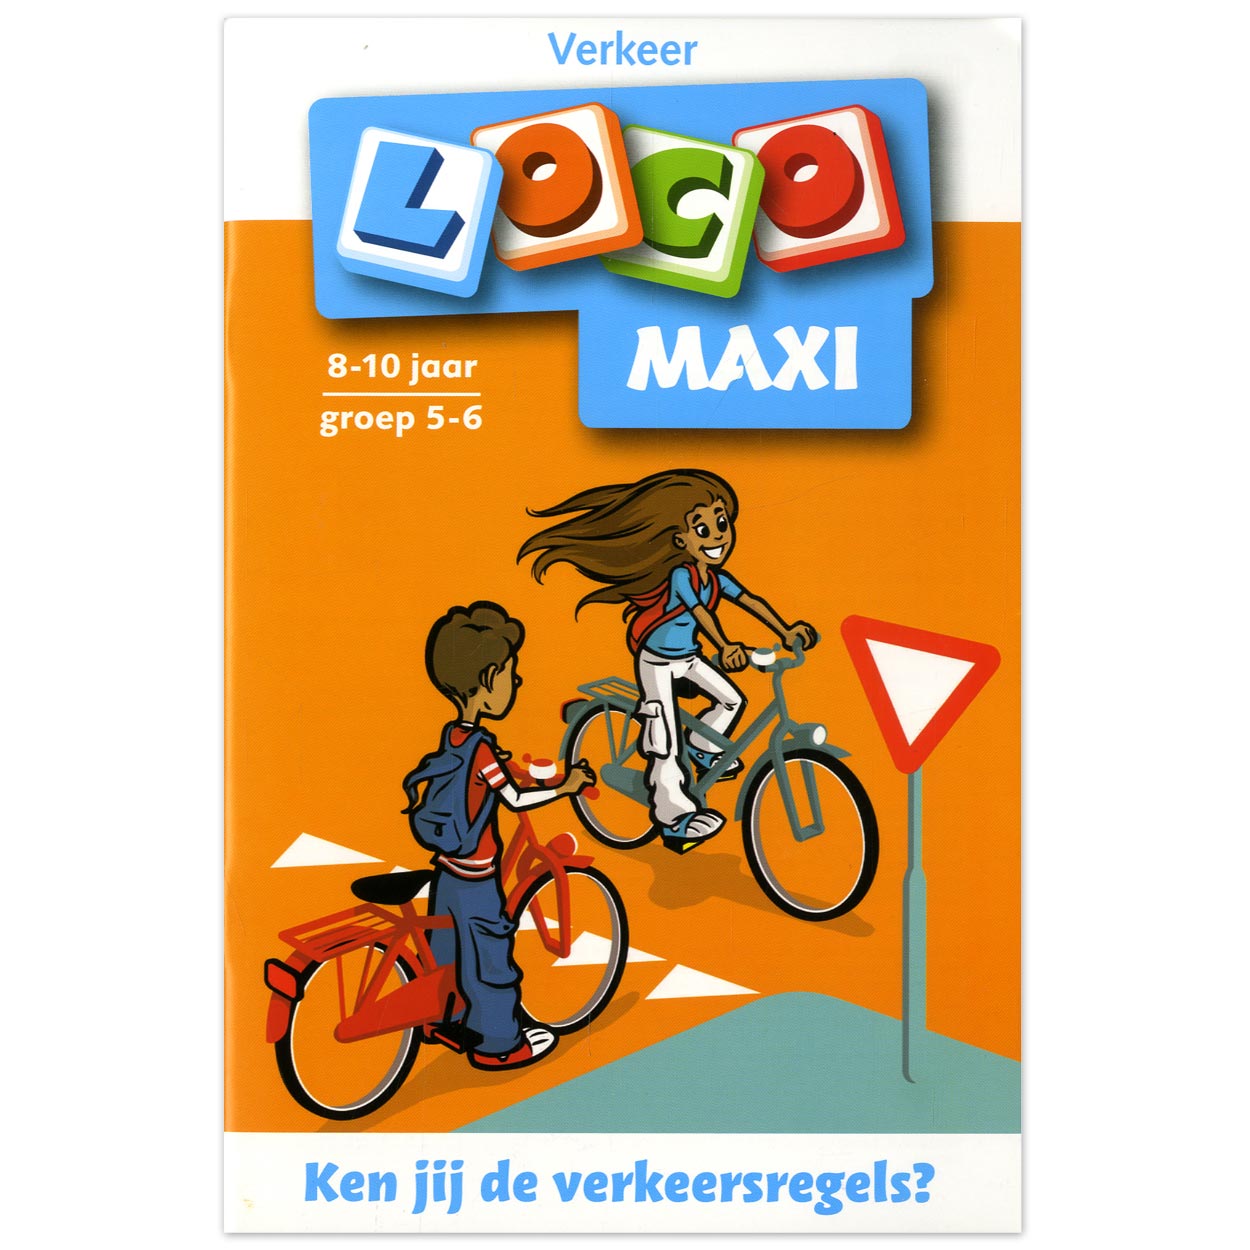 Loco Maxi - Ken jij de verkeersregels? Groep 5-6 (8-10 jr.)